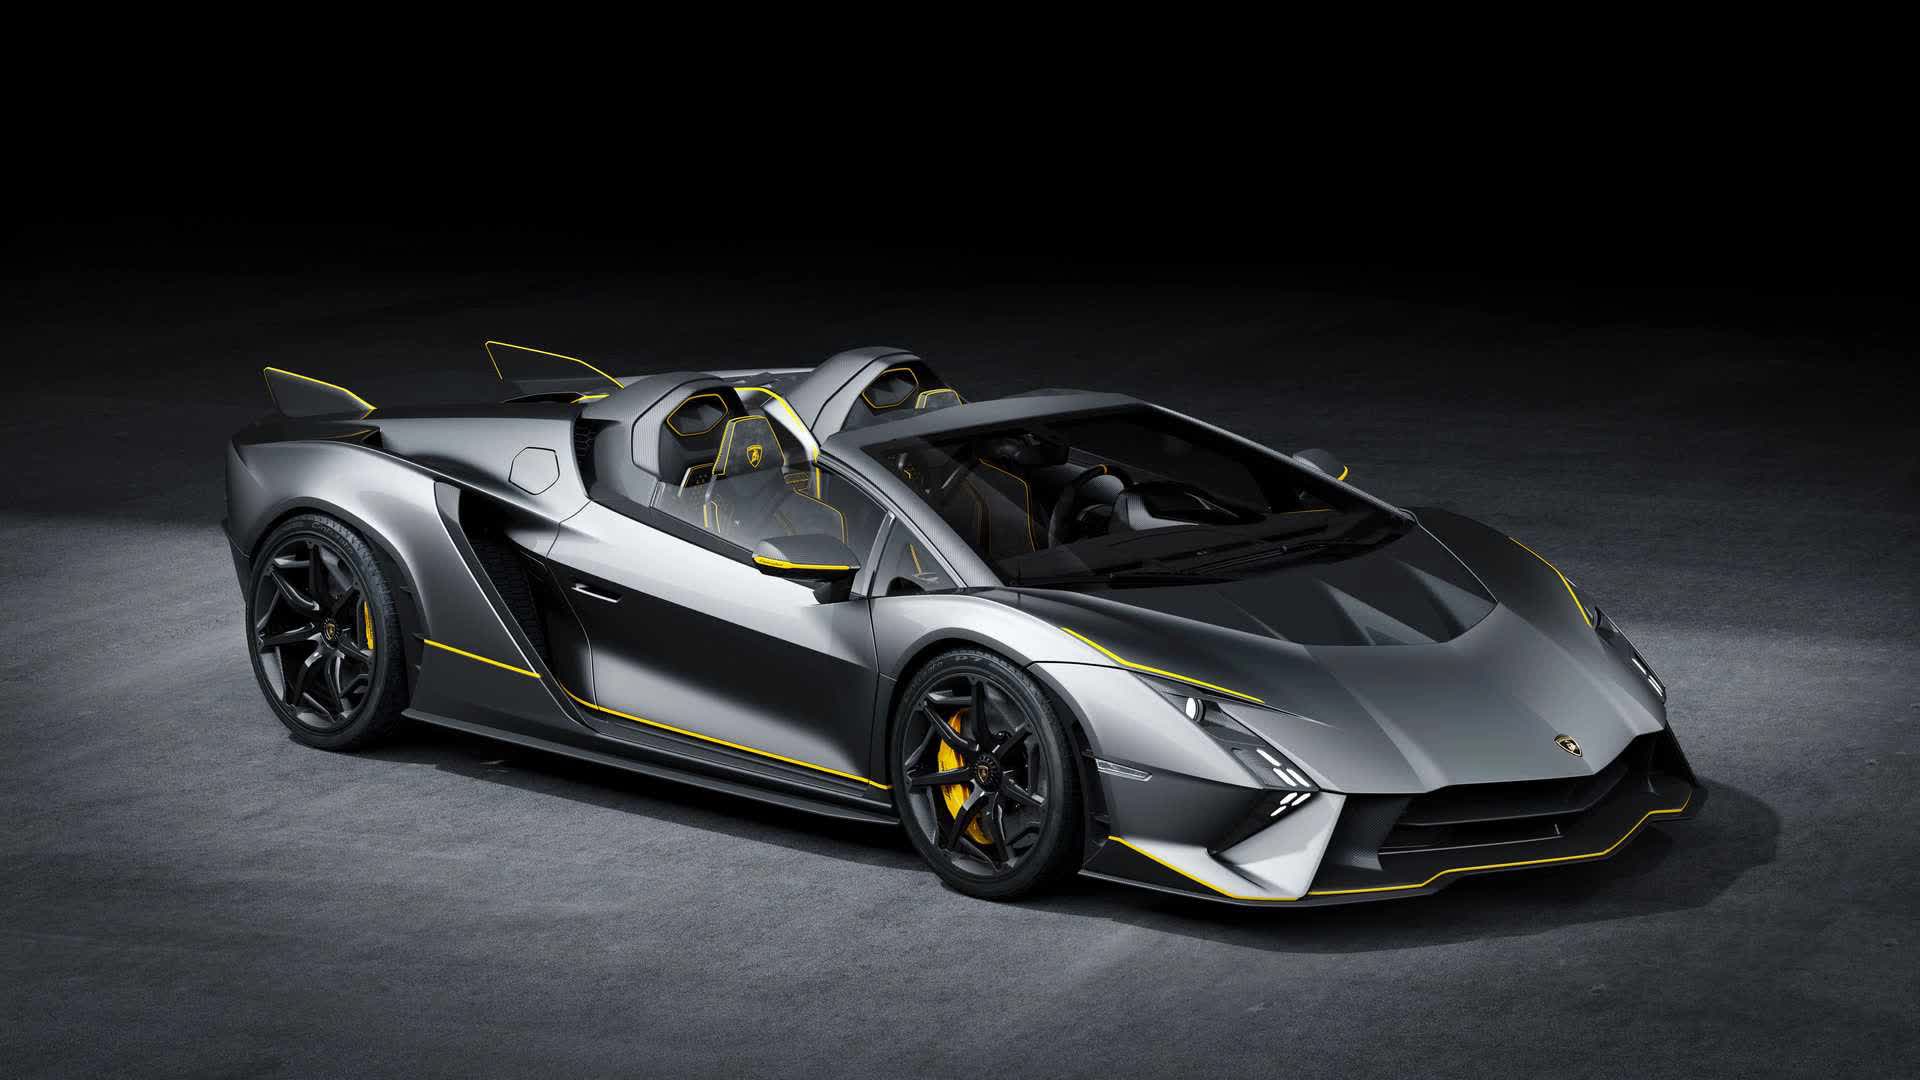 Lamborghini ra mắt bộ đôi siêu xe V12 chạy xăng cuối cùng, sau đây sẽ toàn siêu xe điện êm ru chưa biết nẹt pô kiểu gì - ảnh 13